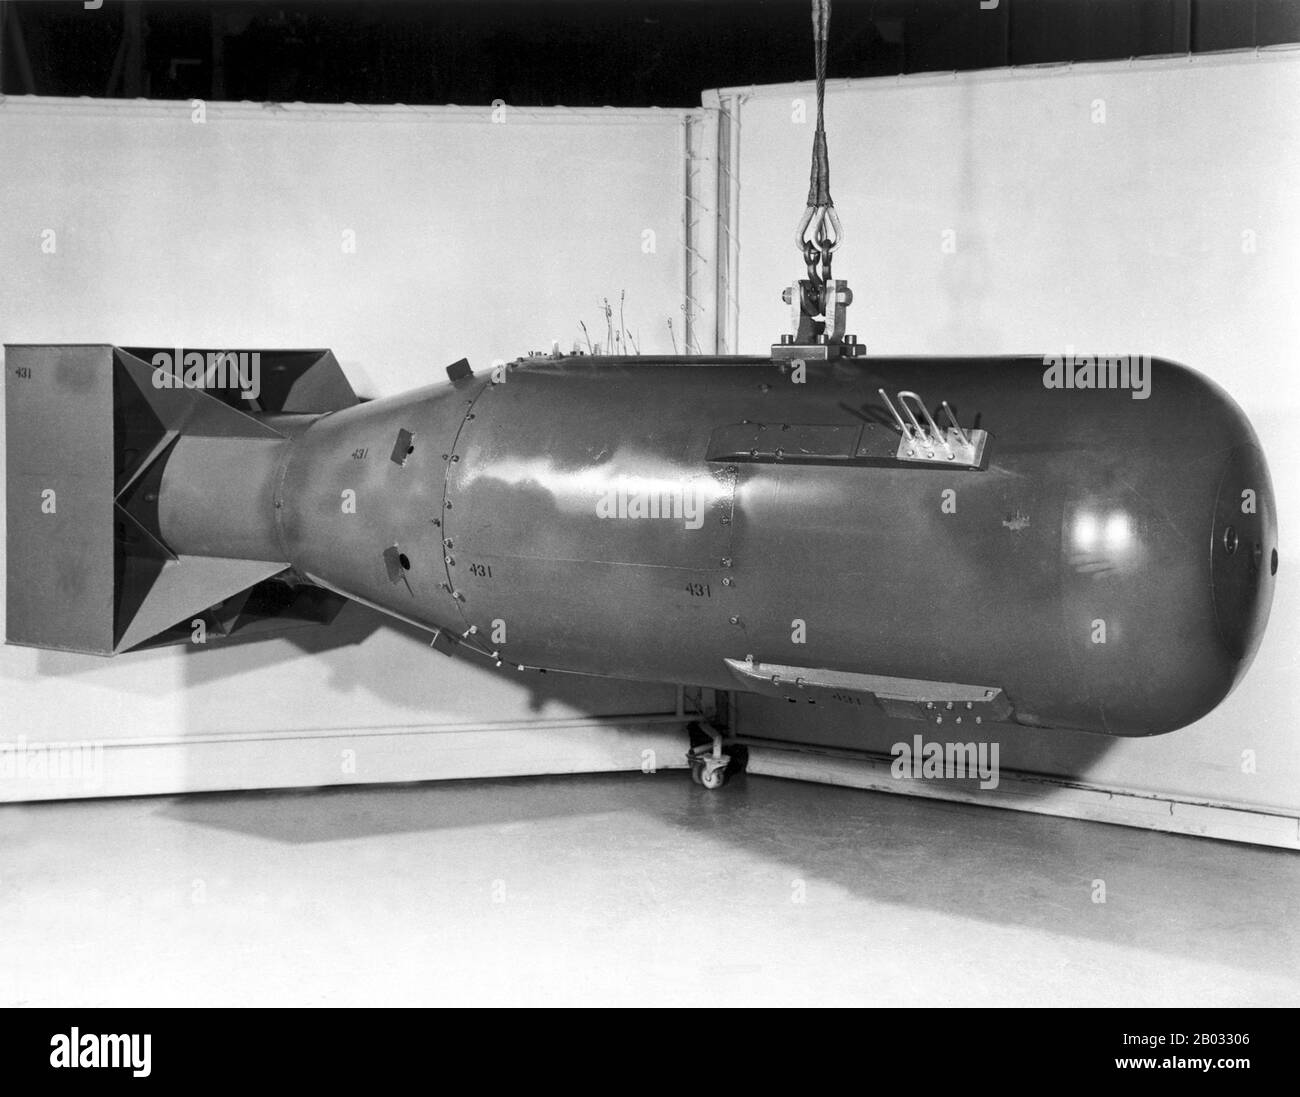 "Little Boy" war der Codename für die Atombombe, die am 6. August 1945 in der japanischen Stadt Hiroshima abgeworfen wurde. Es war die erste Atombombe, die in der Kriegsführung eingesetzt wurde. Die Bombardierung von Hiroshima war die zweite künstliche Kernexplosion in der Geschichte nach dem Trinity-Test und der ersten Detonation auf Uranbasis. Er explodierte mit einer Energie von ca. 15 Kilotonnen TNT. Die Bombe verursachte erhebliche Zerstörungen in der Stadt Hiroshima. Stockfoto